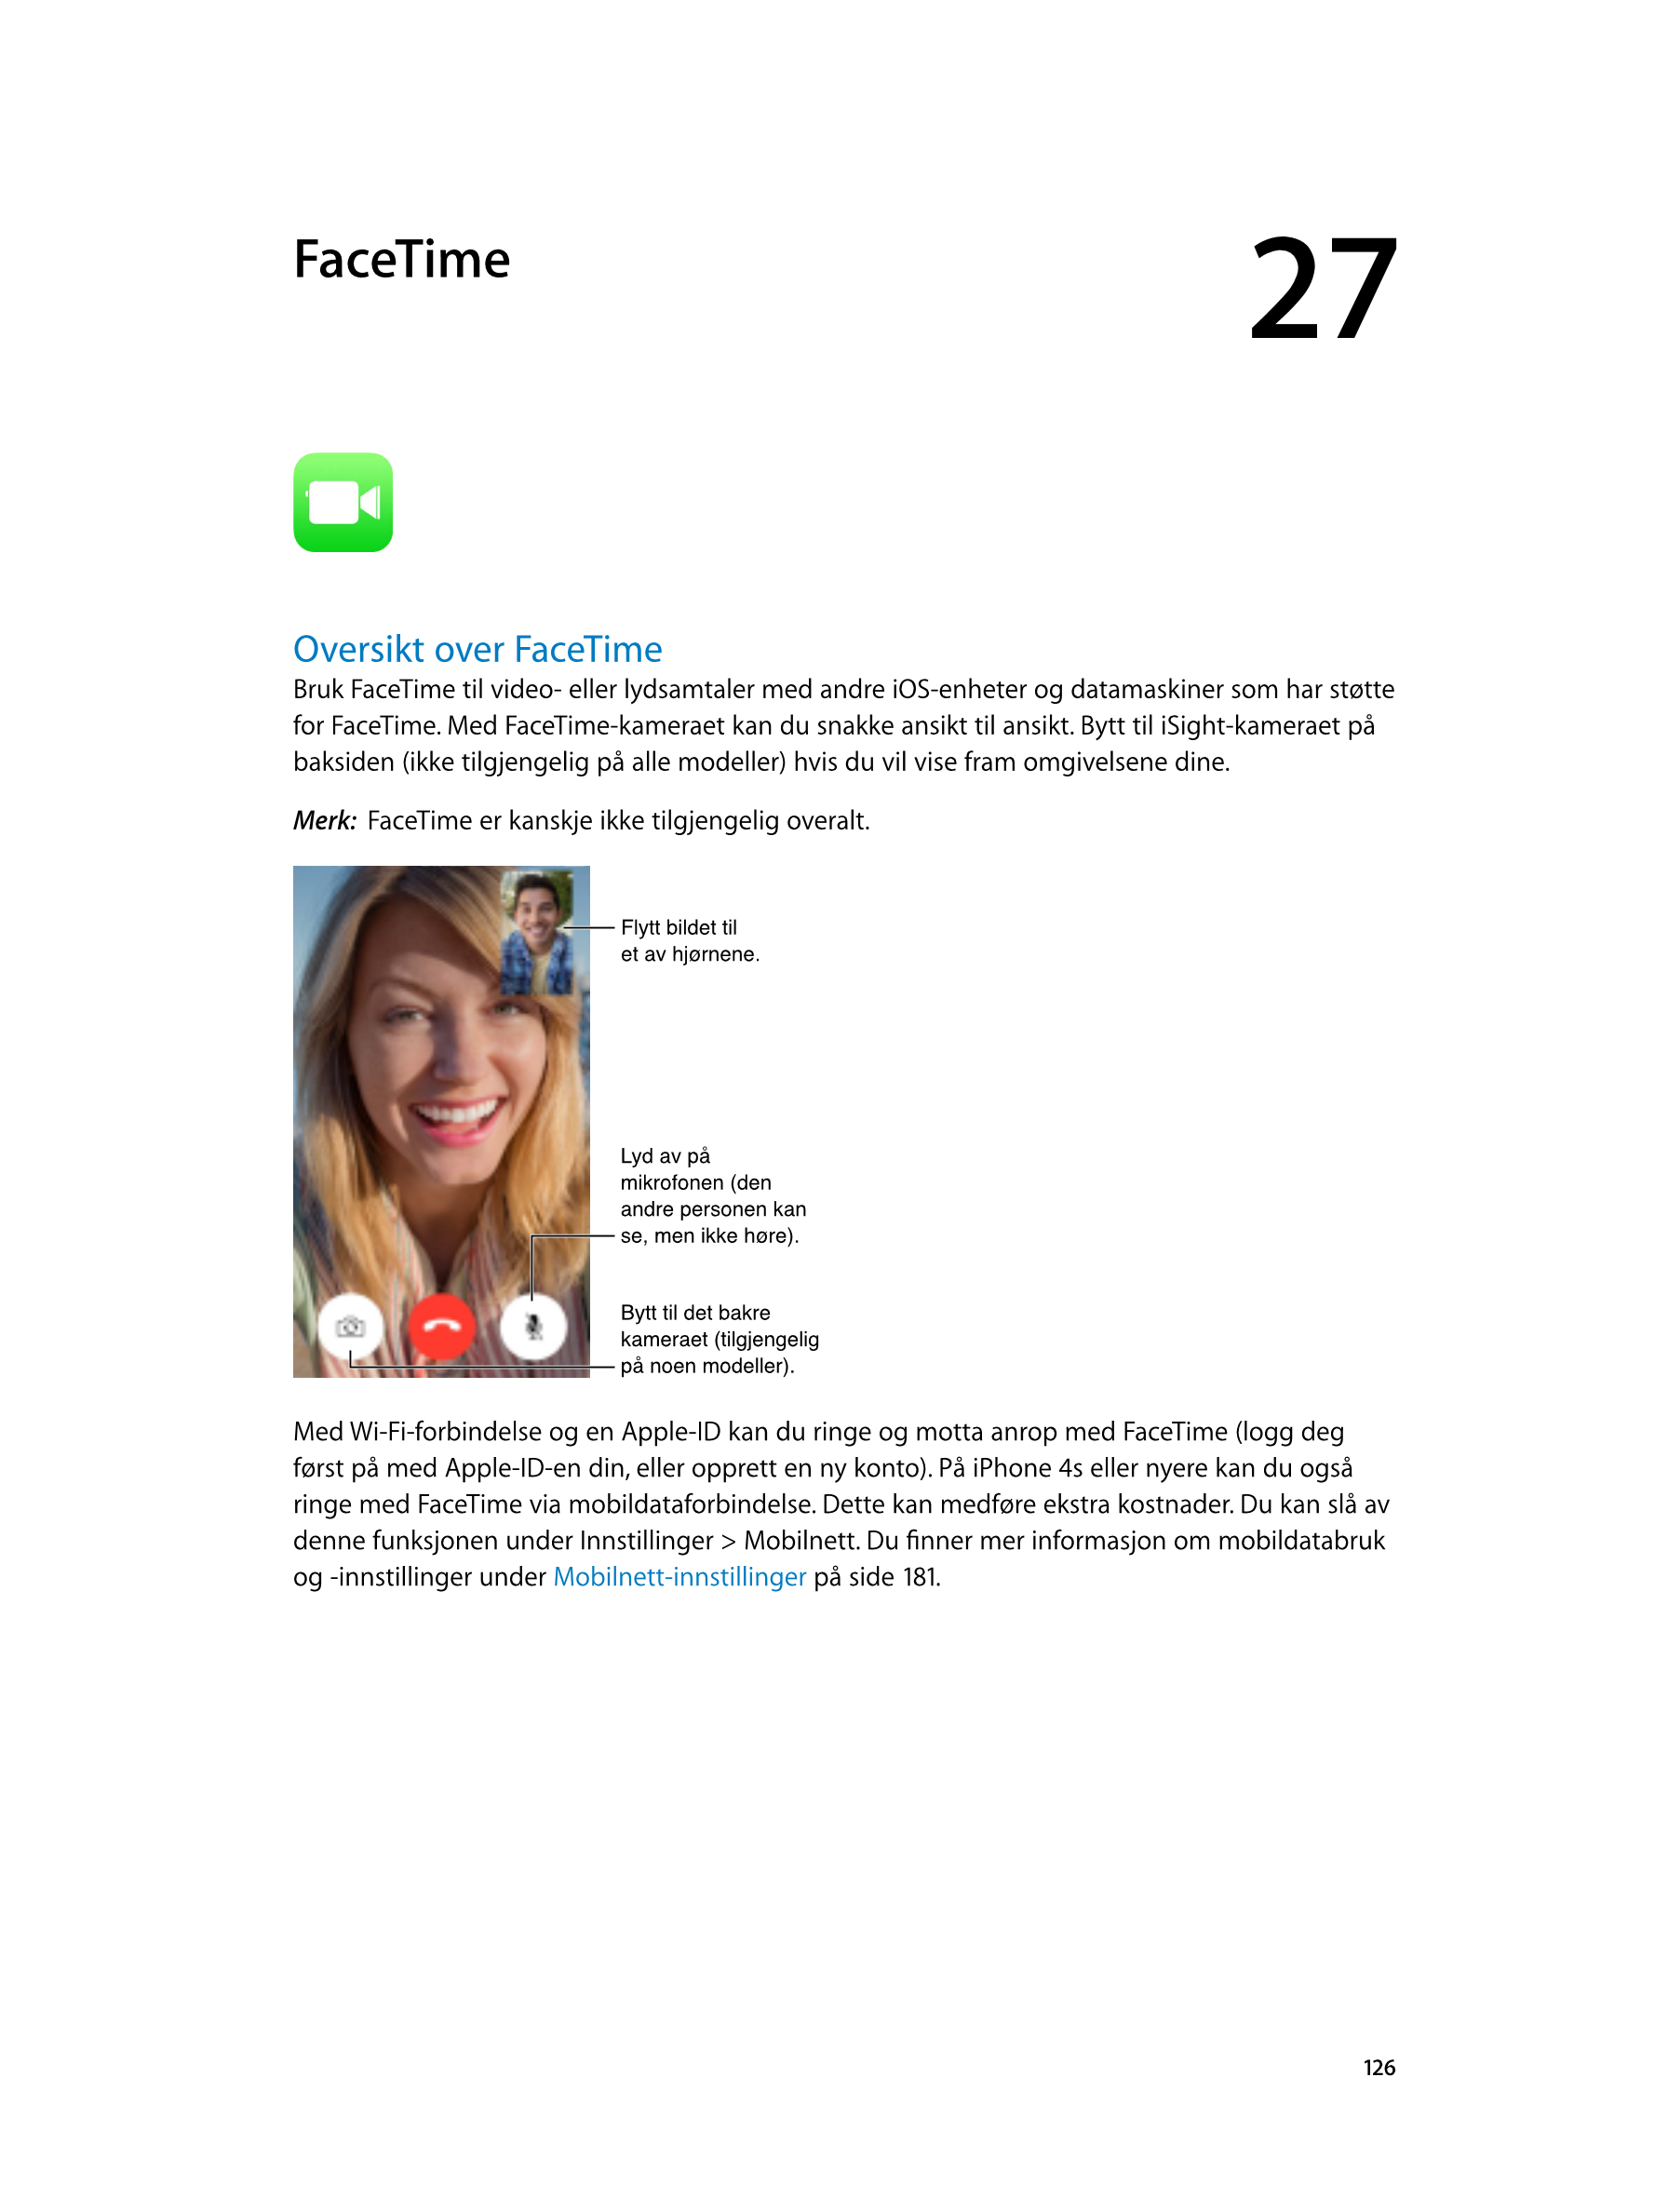   FaceTime 27
Oversikt over FaceTime
Bruk FaceTime til video- eller lydsamtaler med andre iOS-enheter og datamaskiner som har st